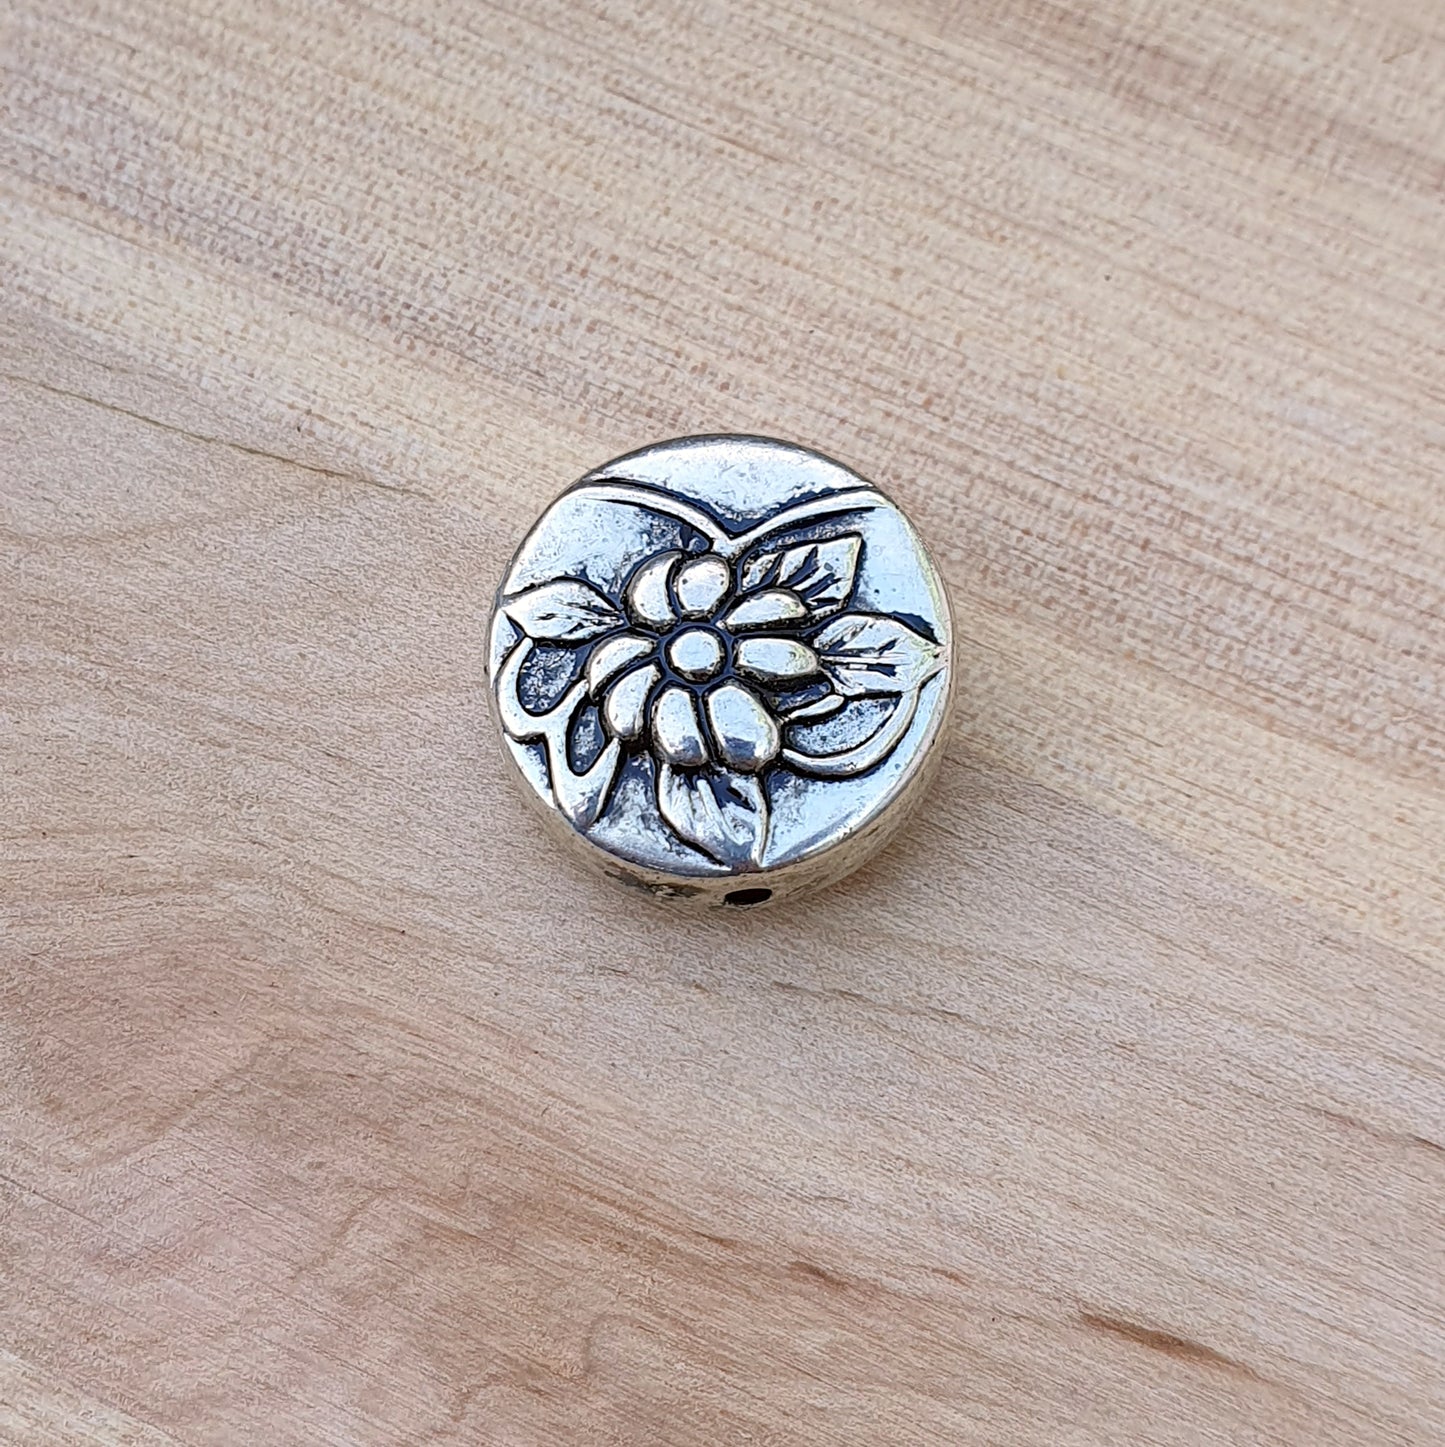 Große Perle aus galvanisiertem Kunststoff in Form einer Münze, mit Blume, silber mit Antikfinish